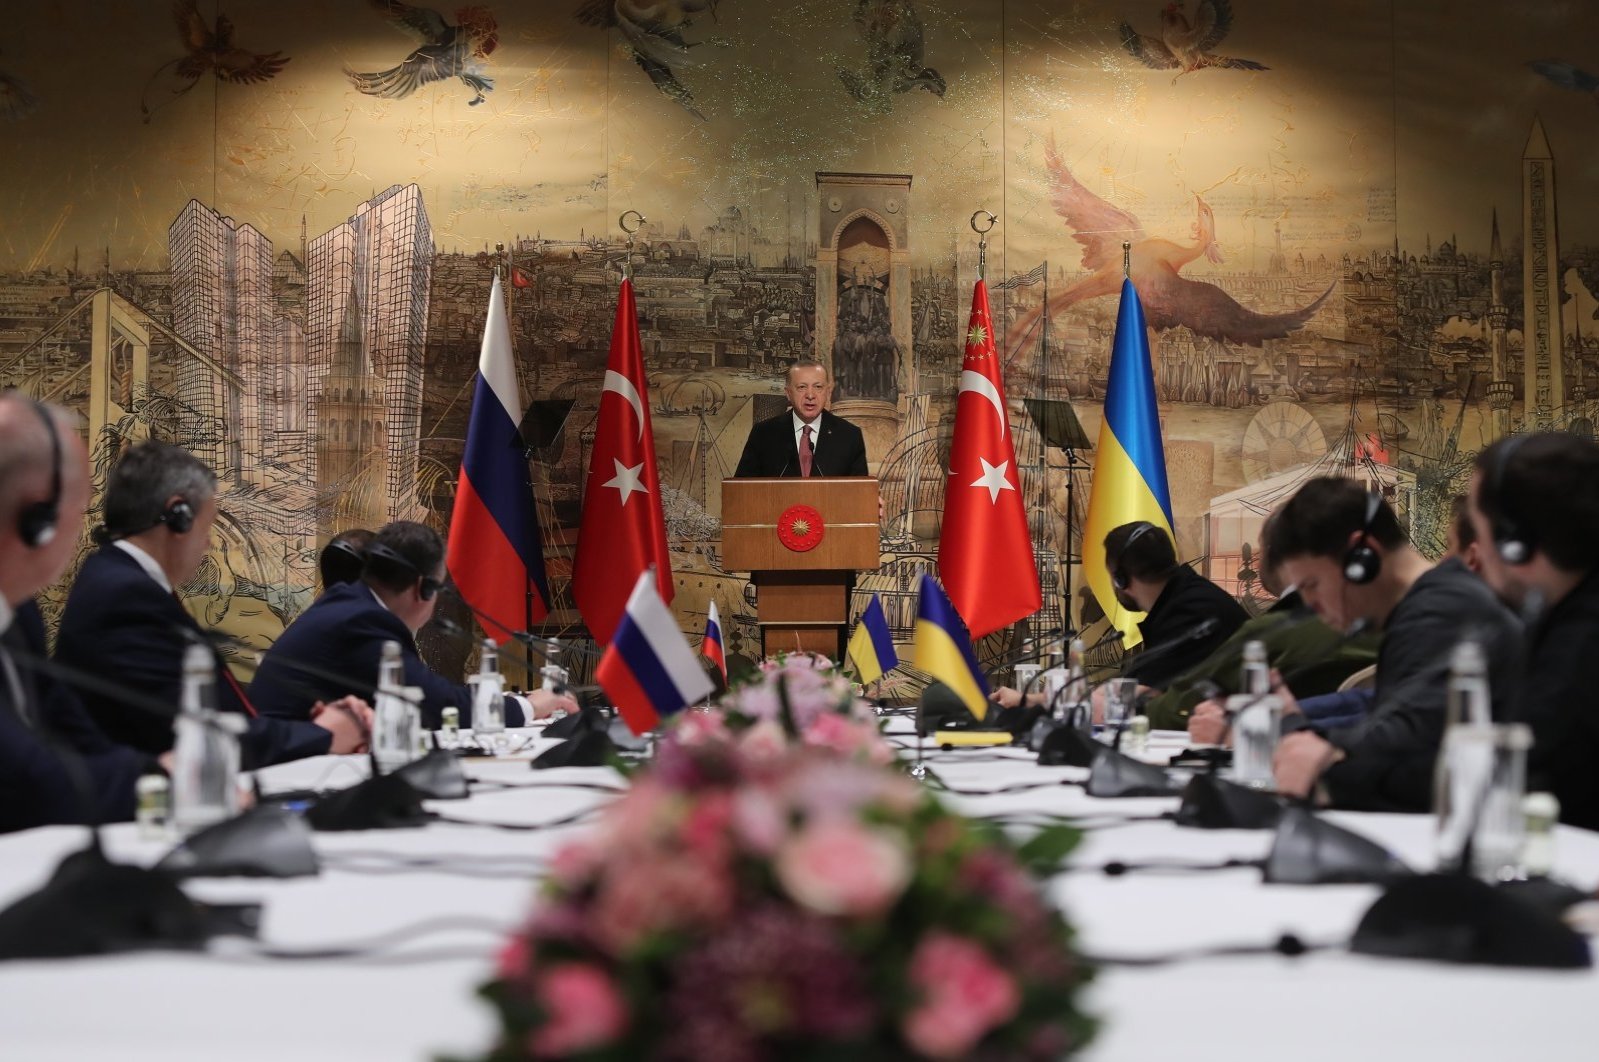 Türkiye sebagai jembatan diplomatik antara Rusia dan Barat